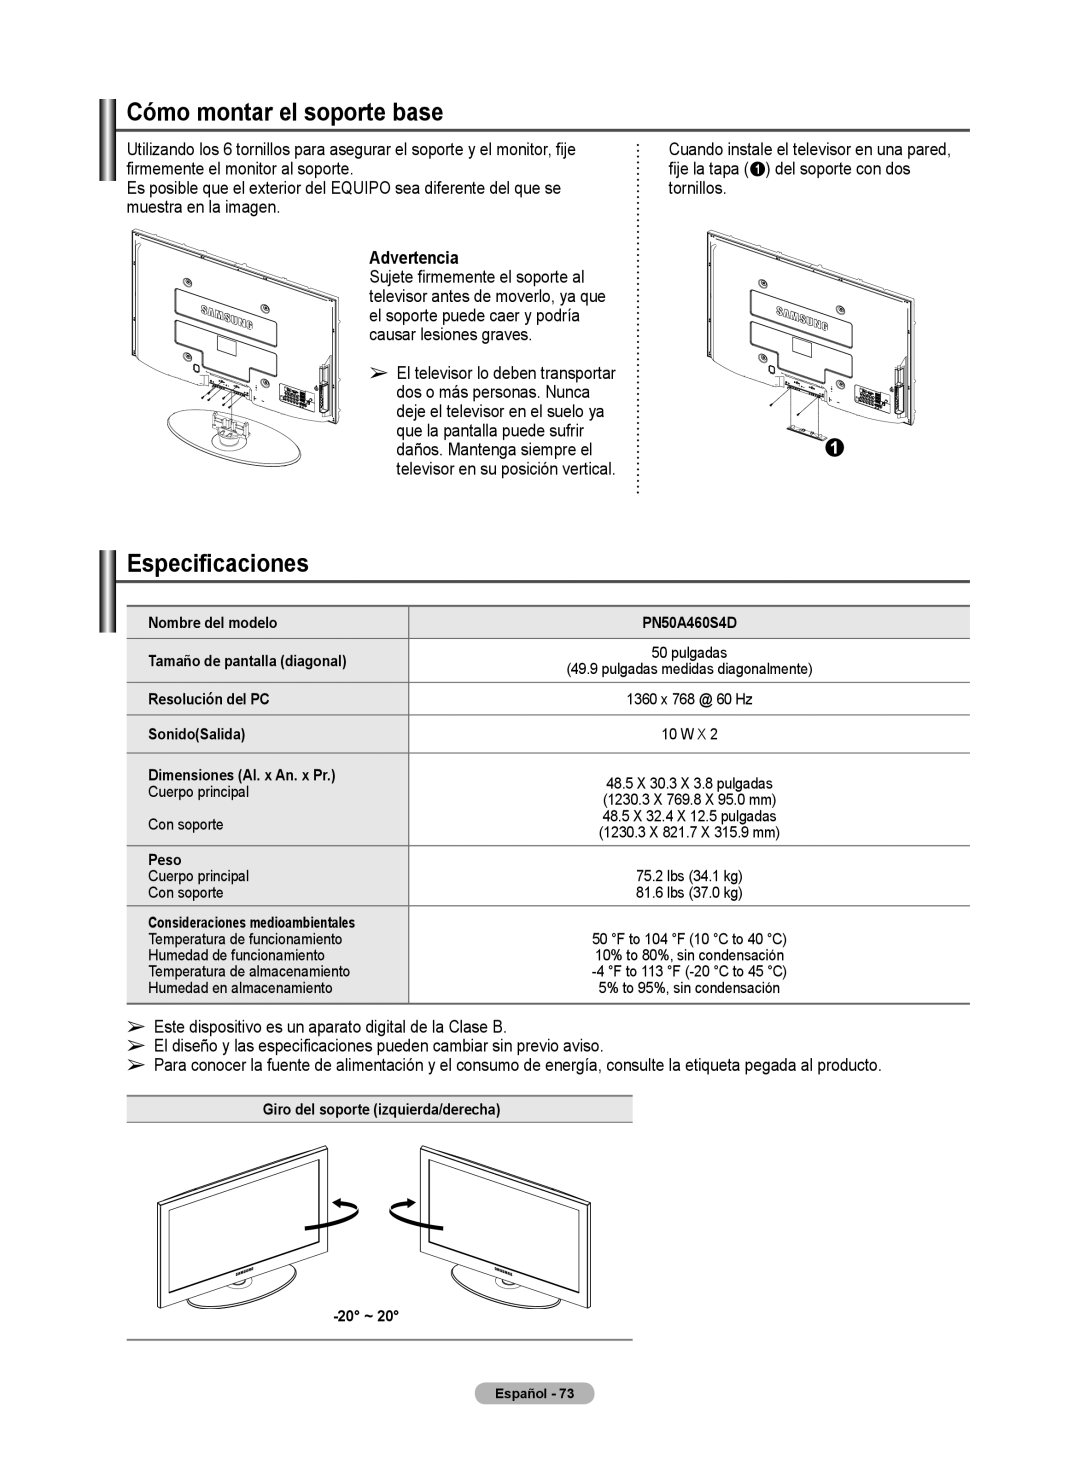 Samsung 460 user manual Cómo montar el soporte base, Especificaciones, Advertencia 